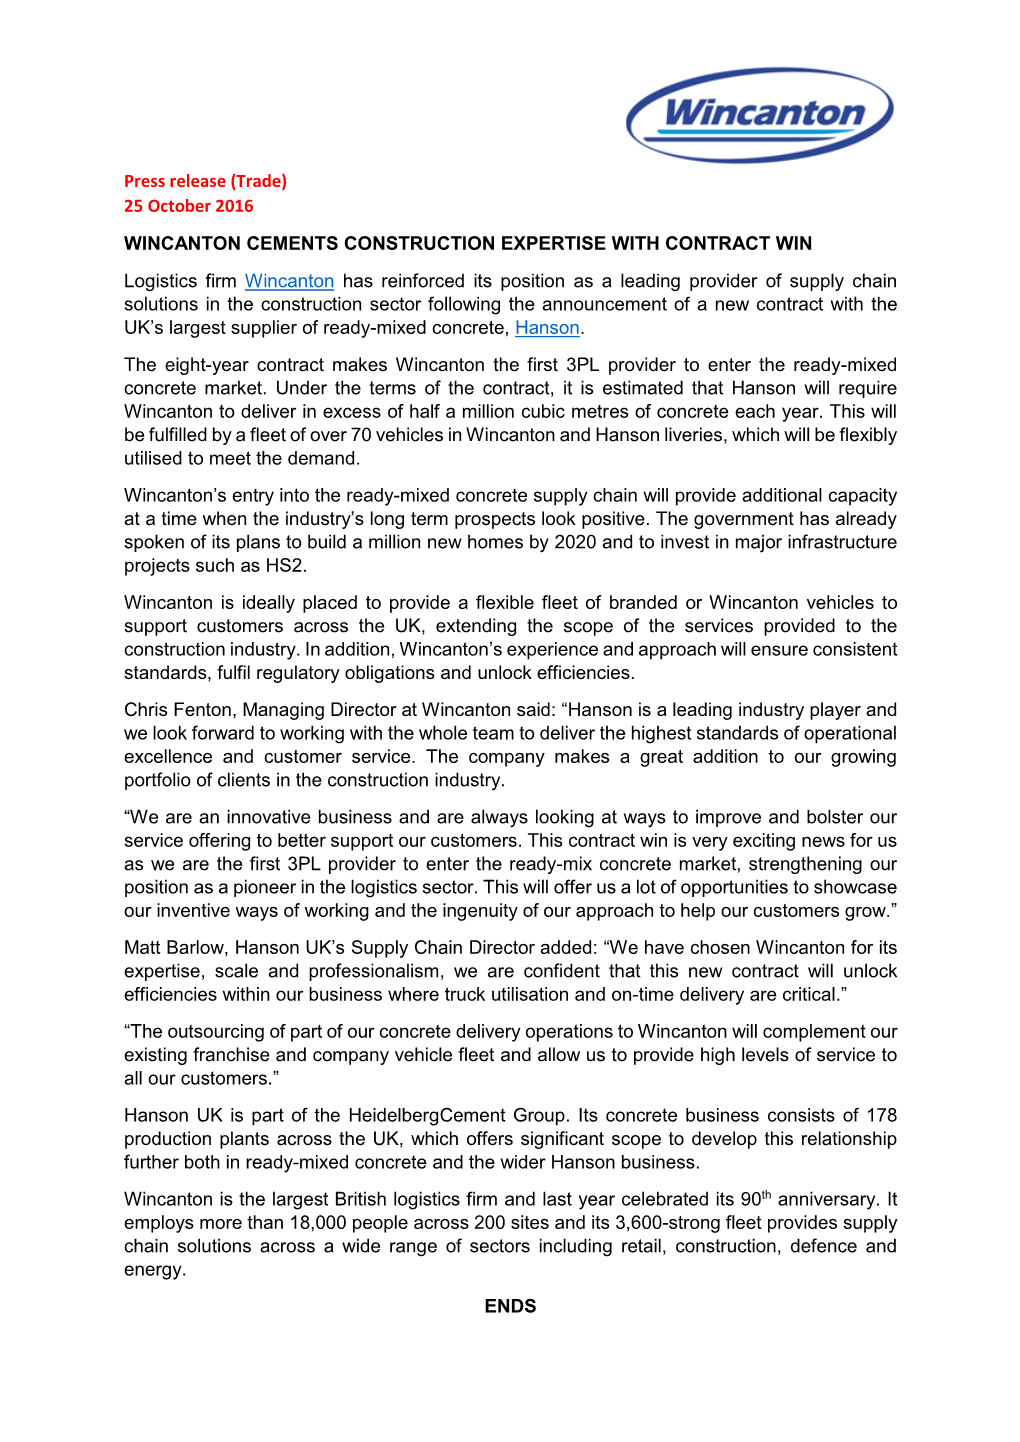 Press Release (Trade) 25 October 2016 WINCANTON CEMENTS